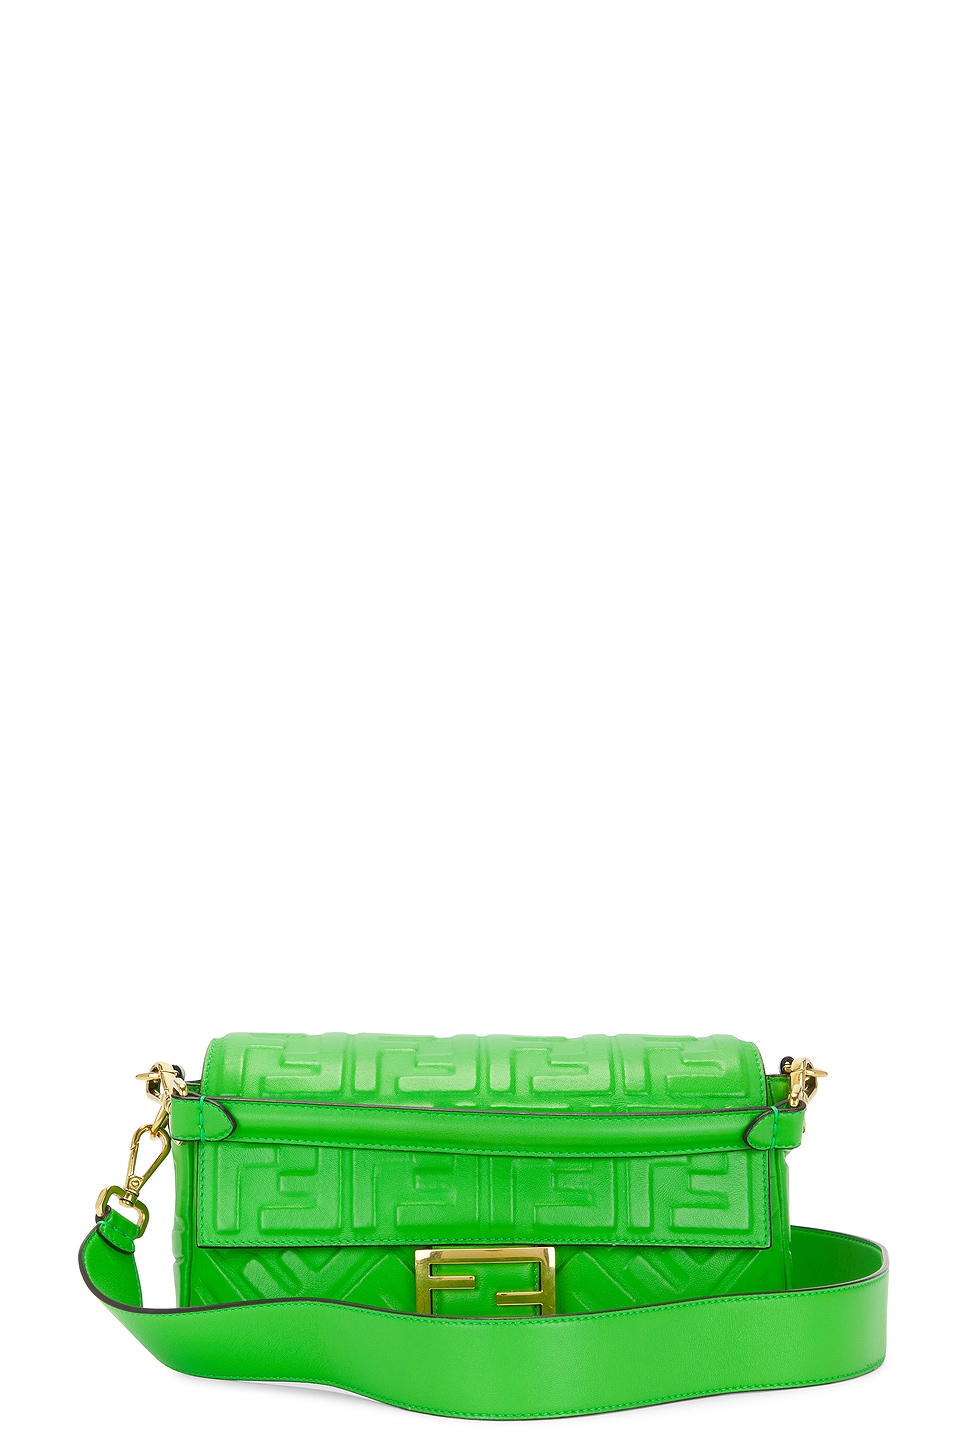 Fendi Baguette Shoulder Bag In Green